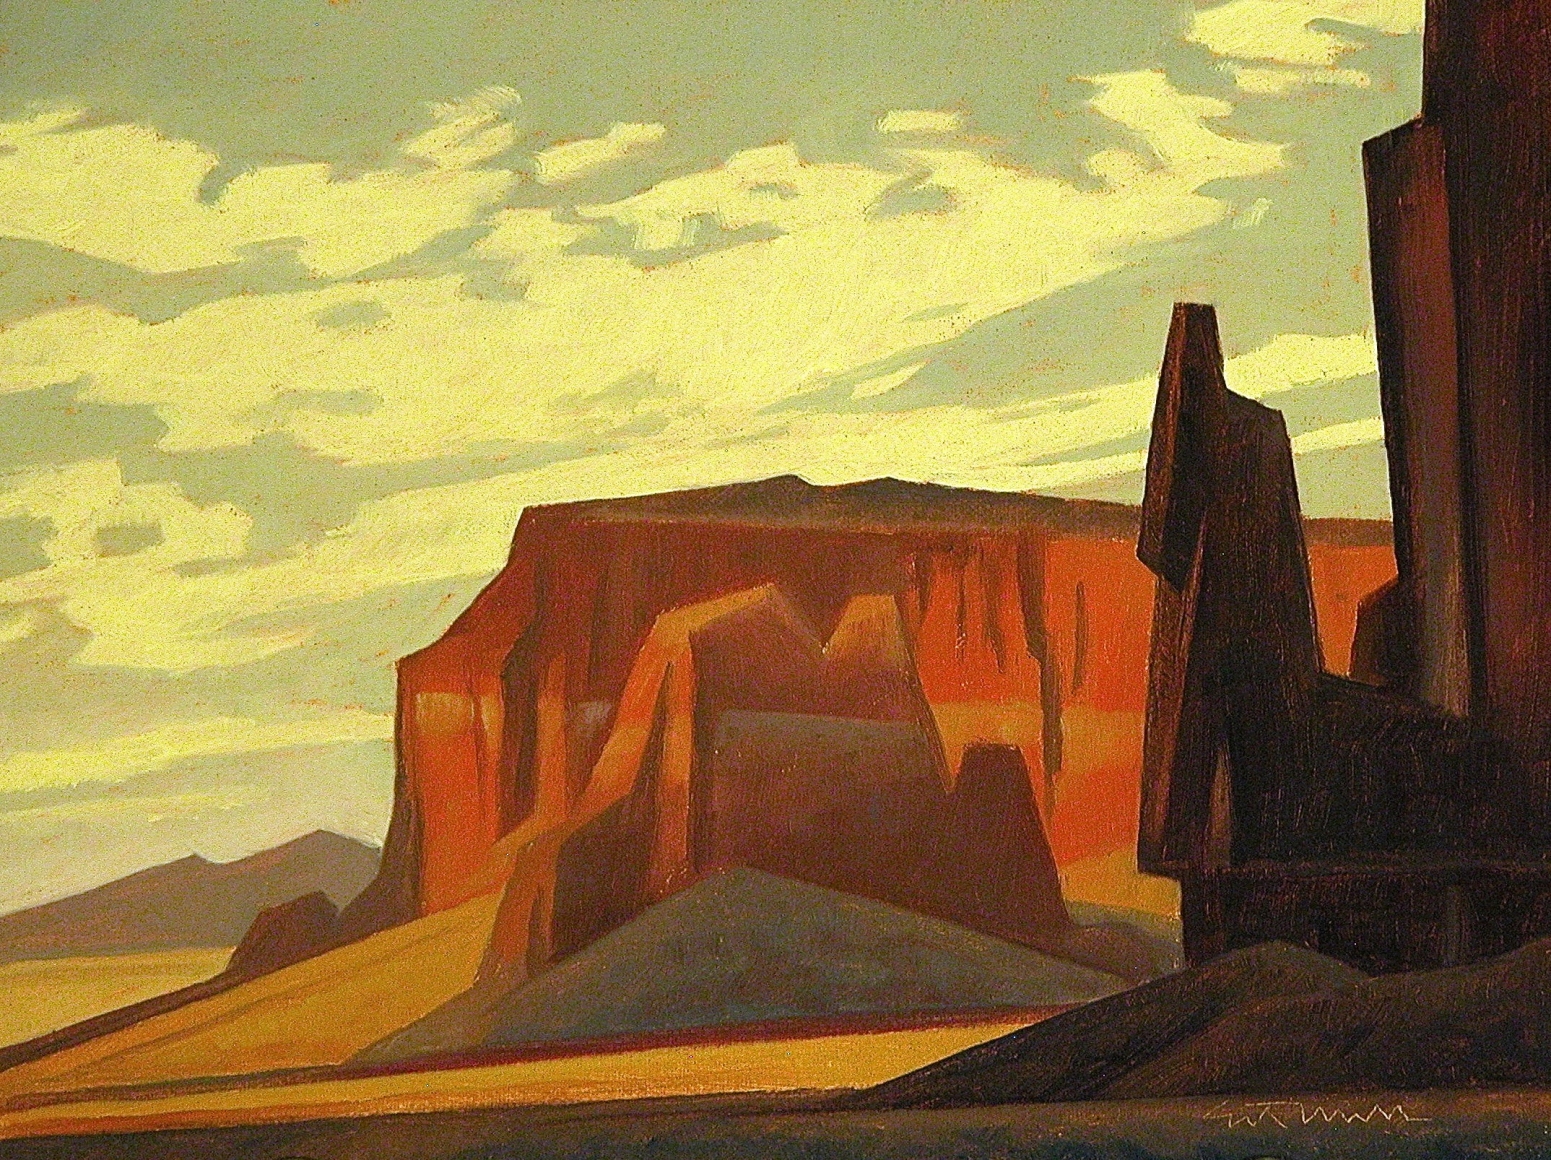 Black Desert Mesa, Ed Mell